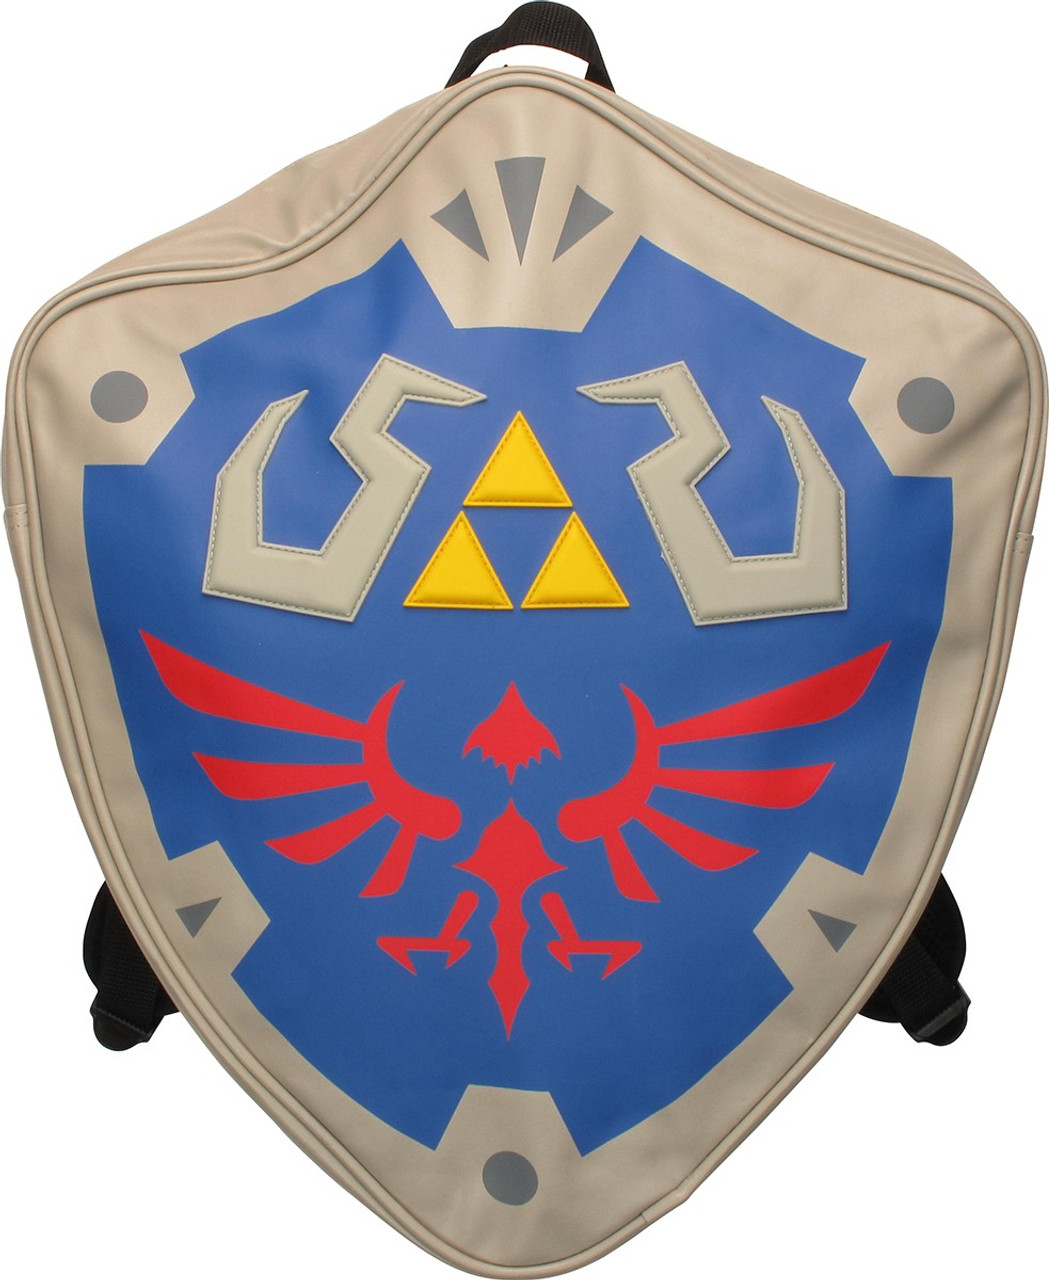 Zelda Link 3D Shield Backpack